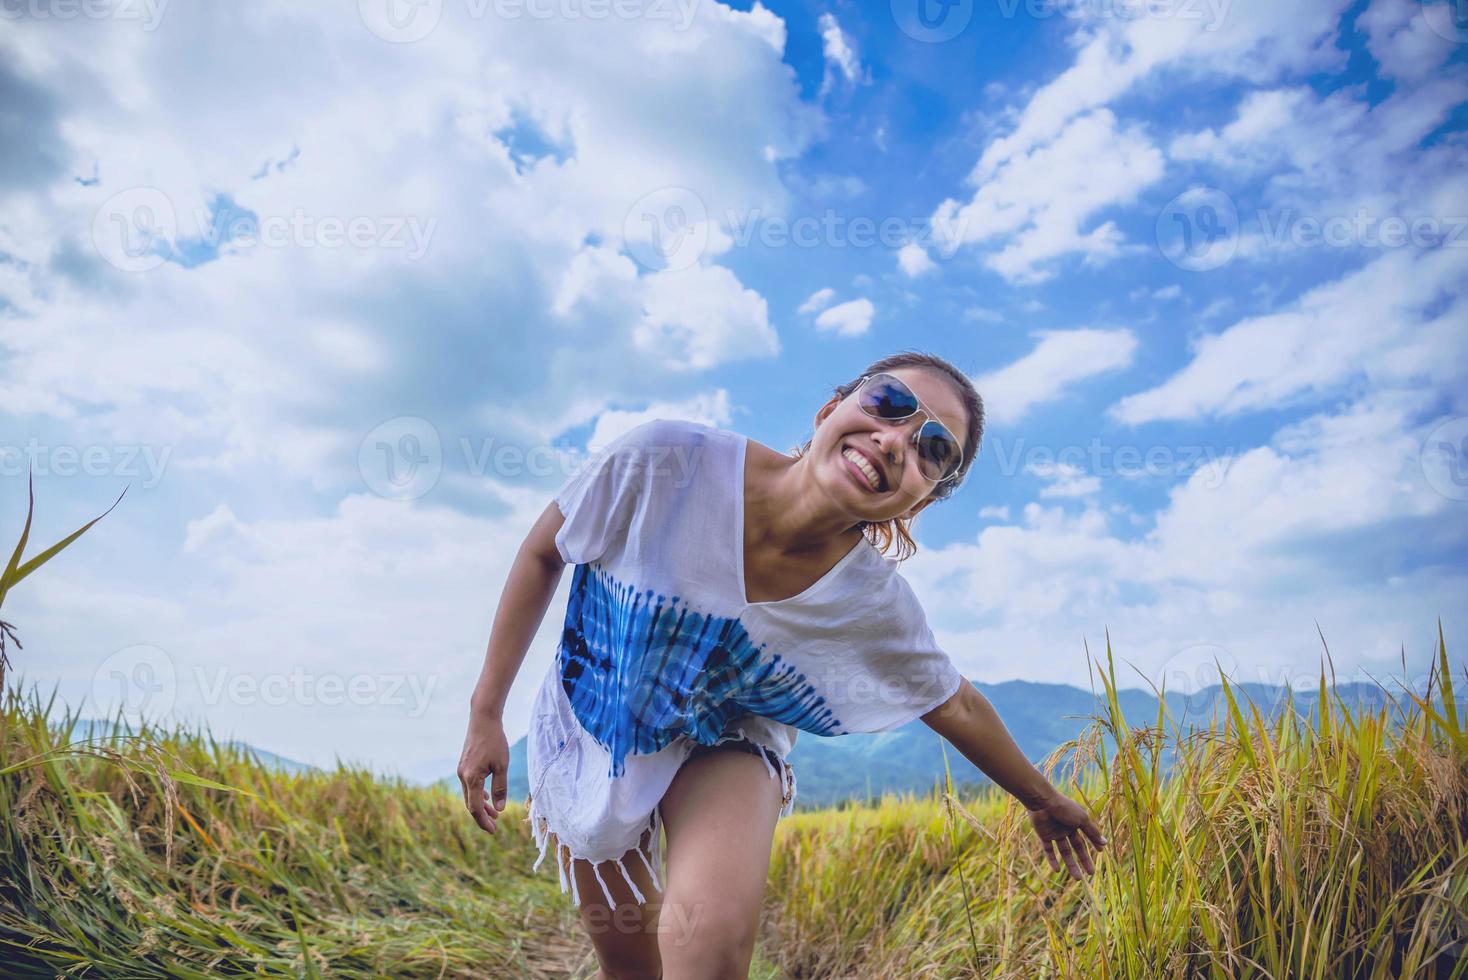 les femmes asiatiques voyagent se détendent pendant les vacances. stand champ de montagne au toucher naturel. Thaïlande photo